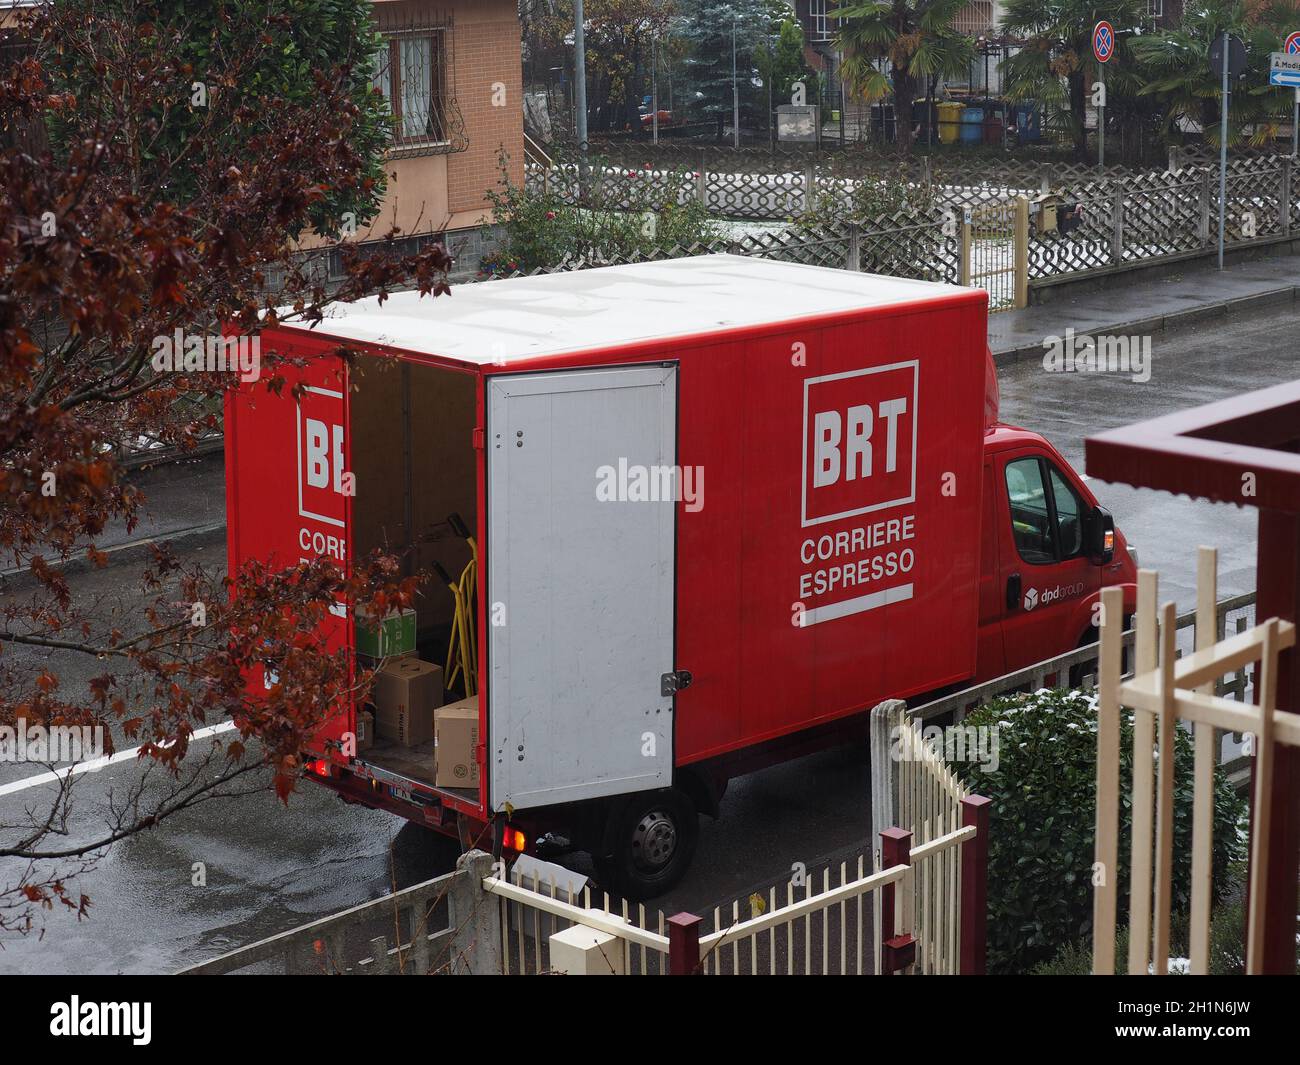 BOLOGNA, ITALY - CIRCA DECEMBER 2020: BRT corriere espresso (express courier) truck Stock Photo